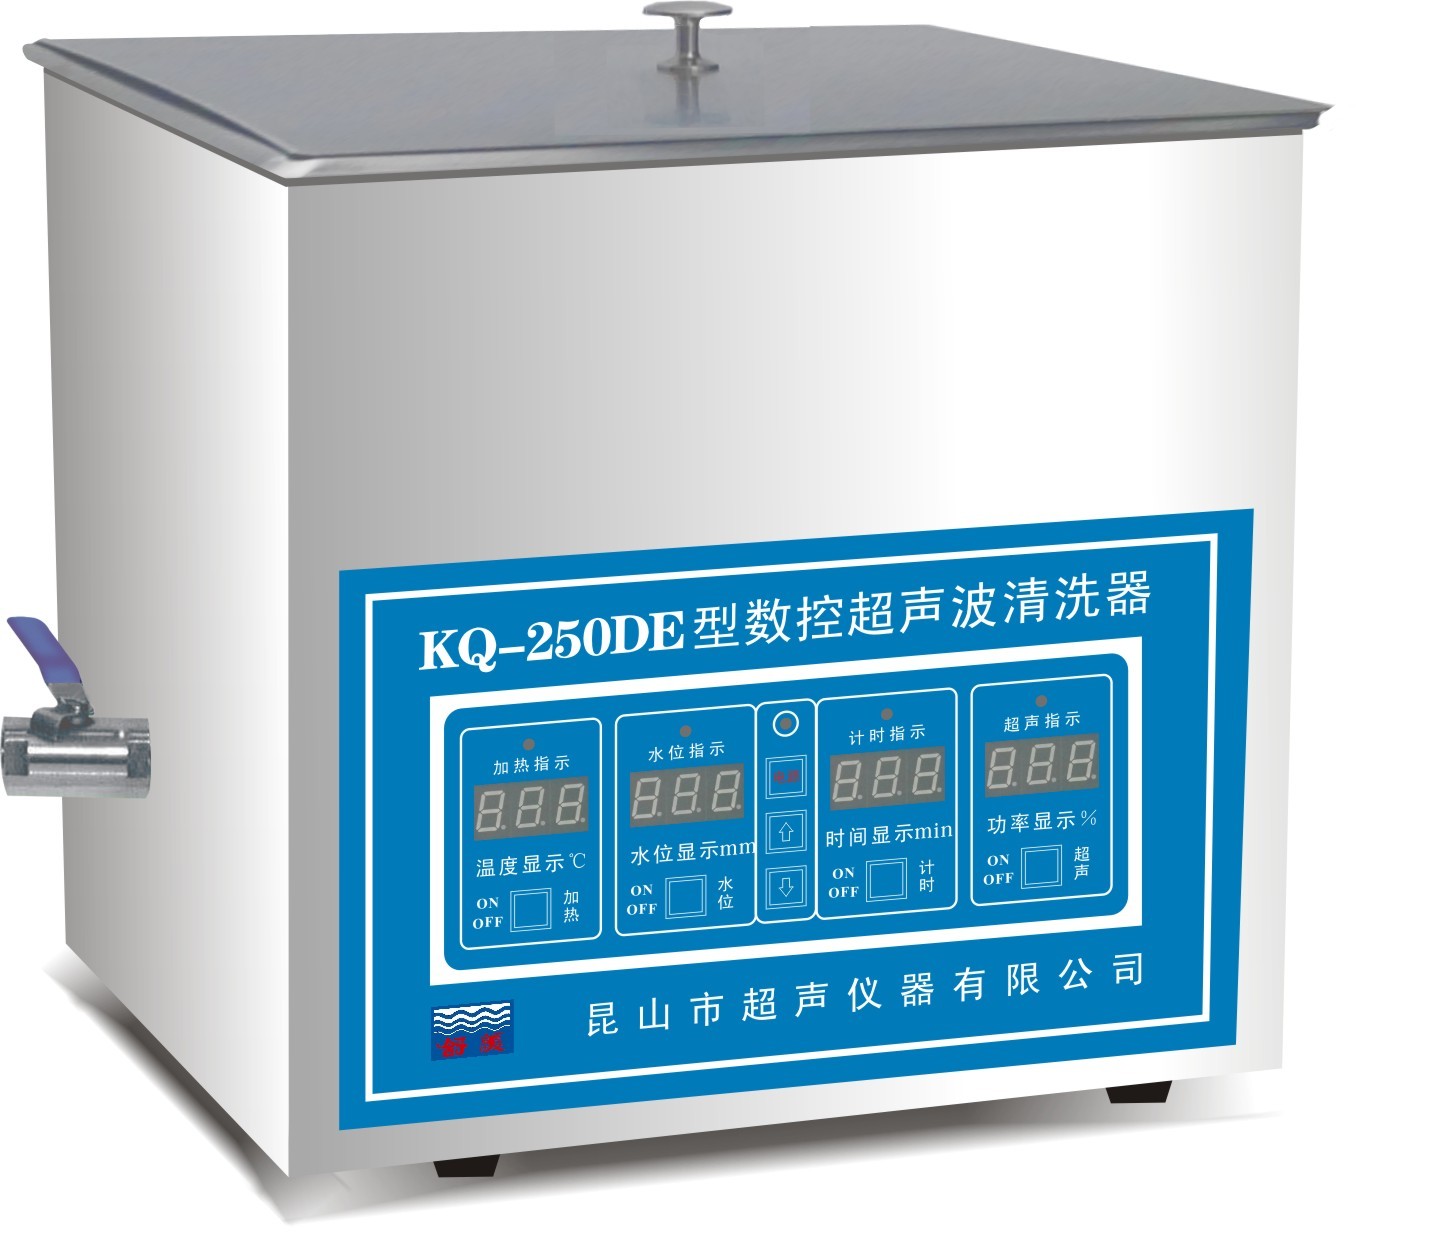 舒美牌 KQ-250DE 台式数控超声波清洗器昆山市超声仪器有限公司